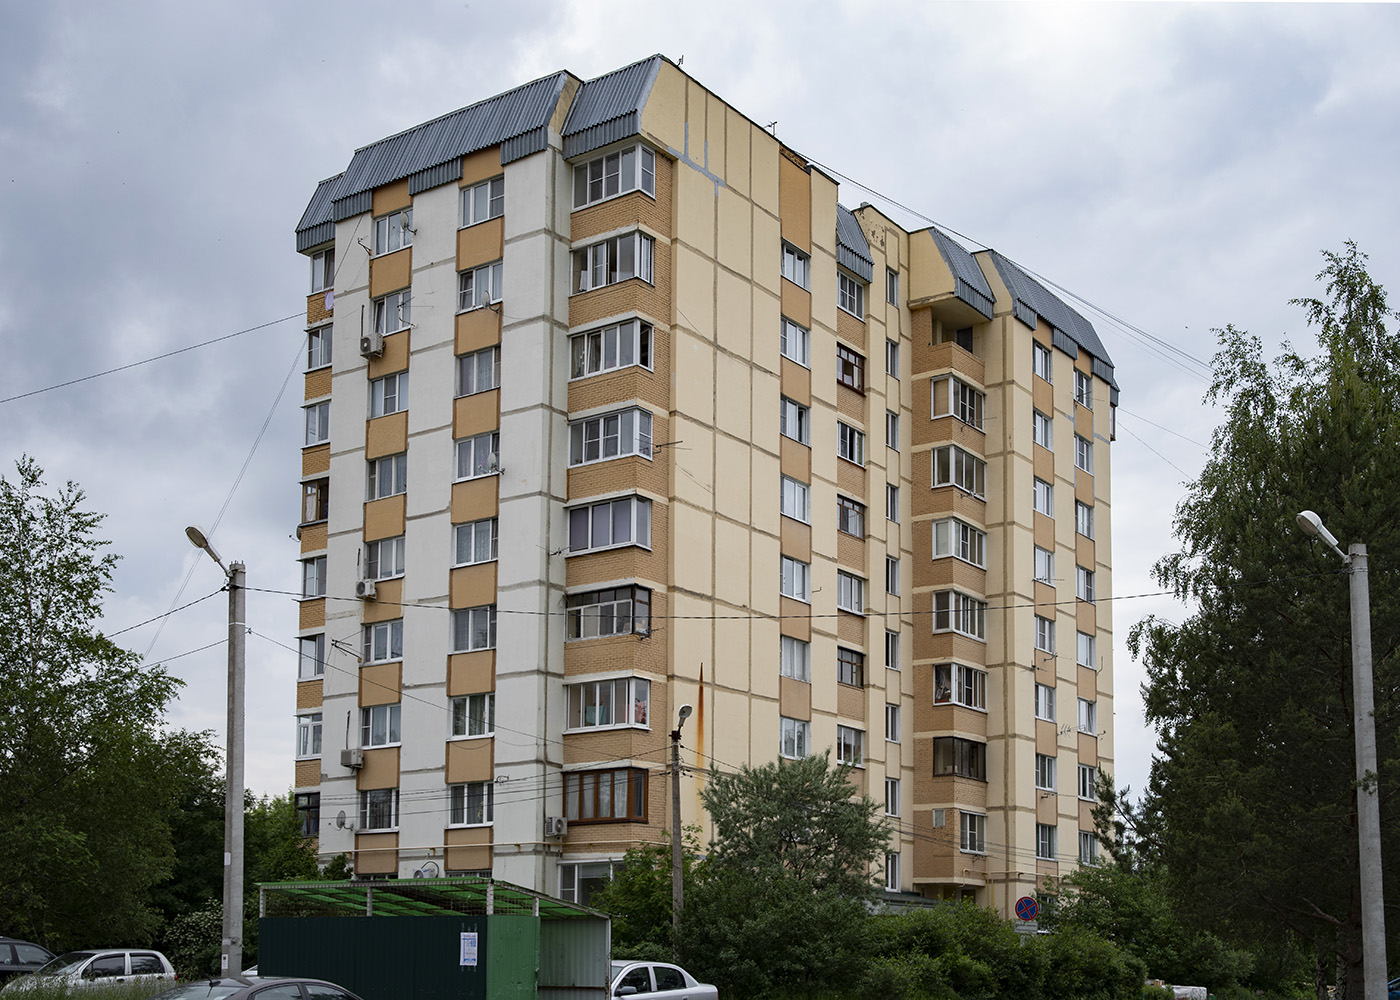 Settlement Voronovskoe, пос. ЛМС, микрорайон Центральный, 34